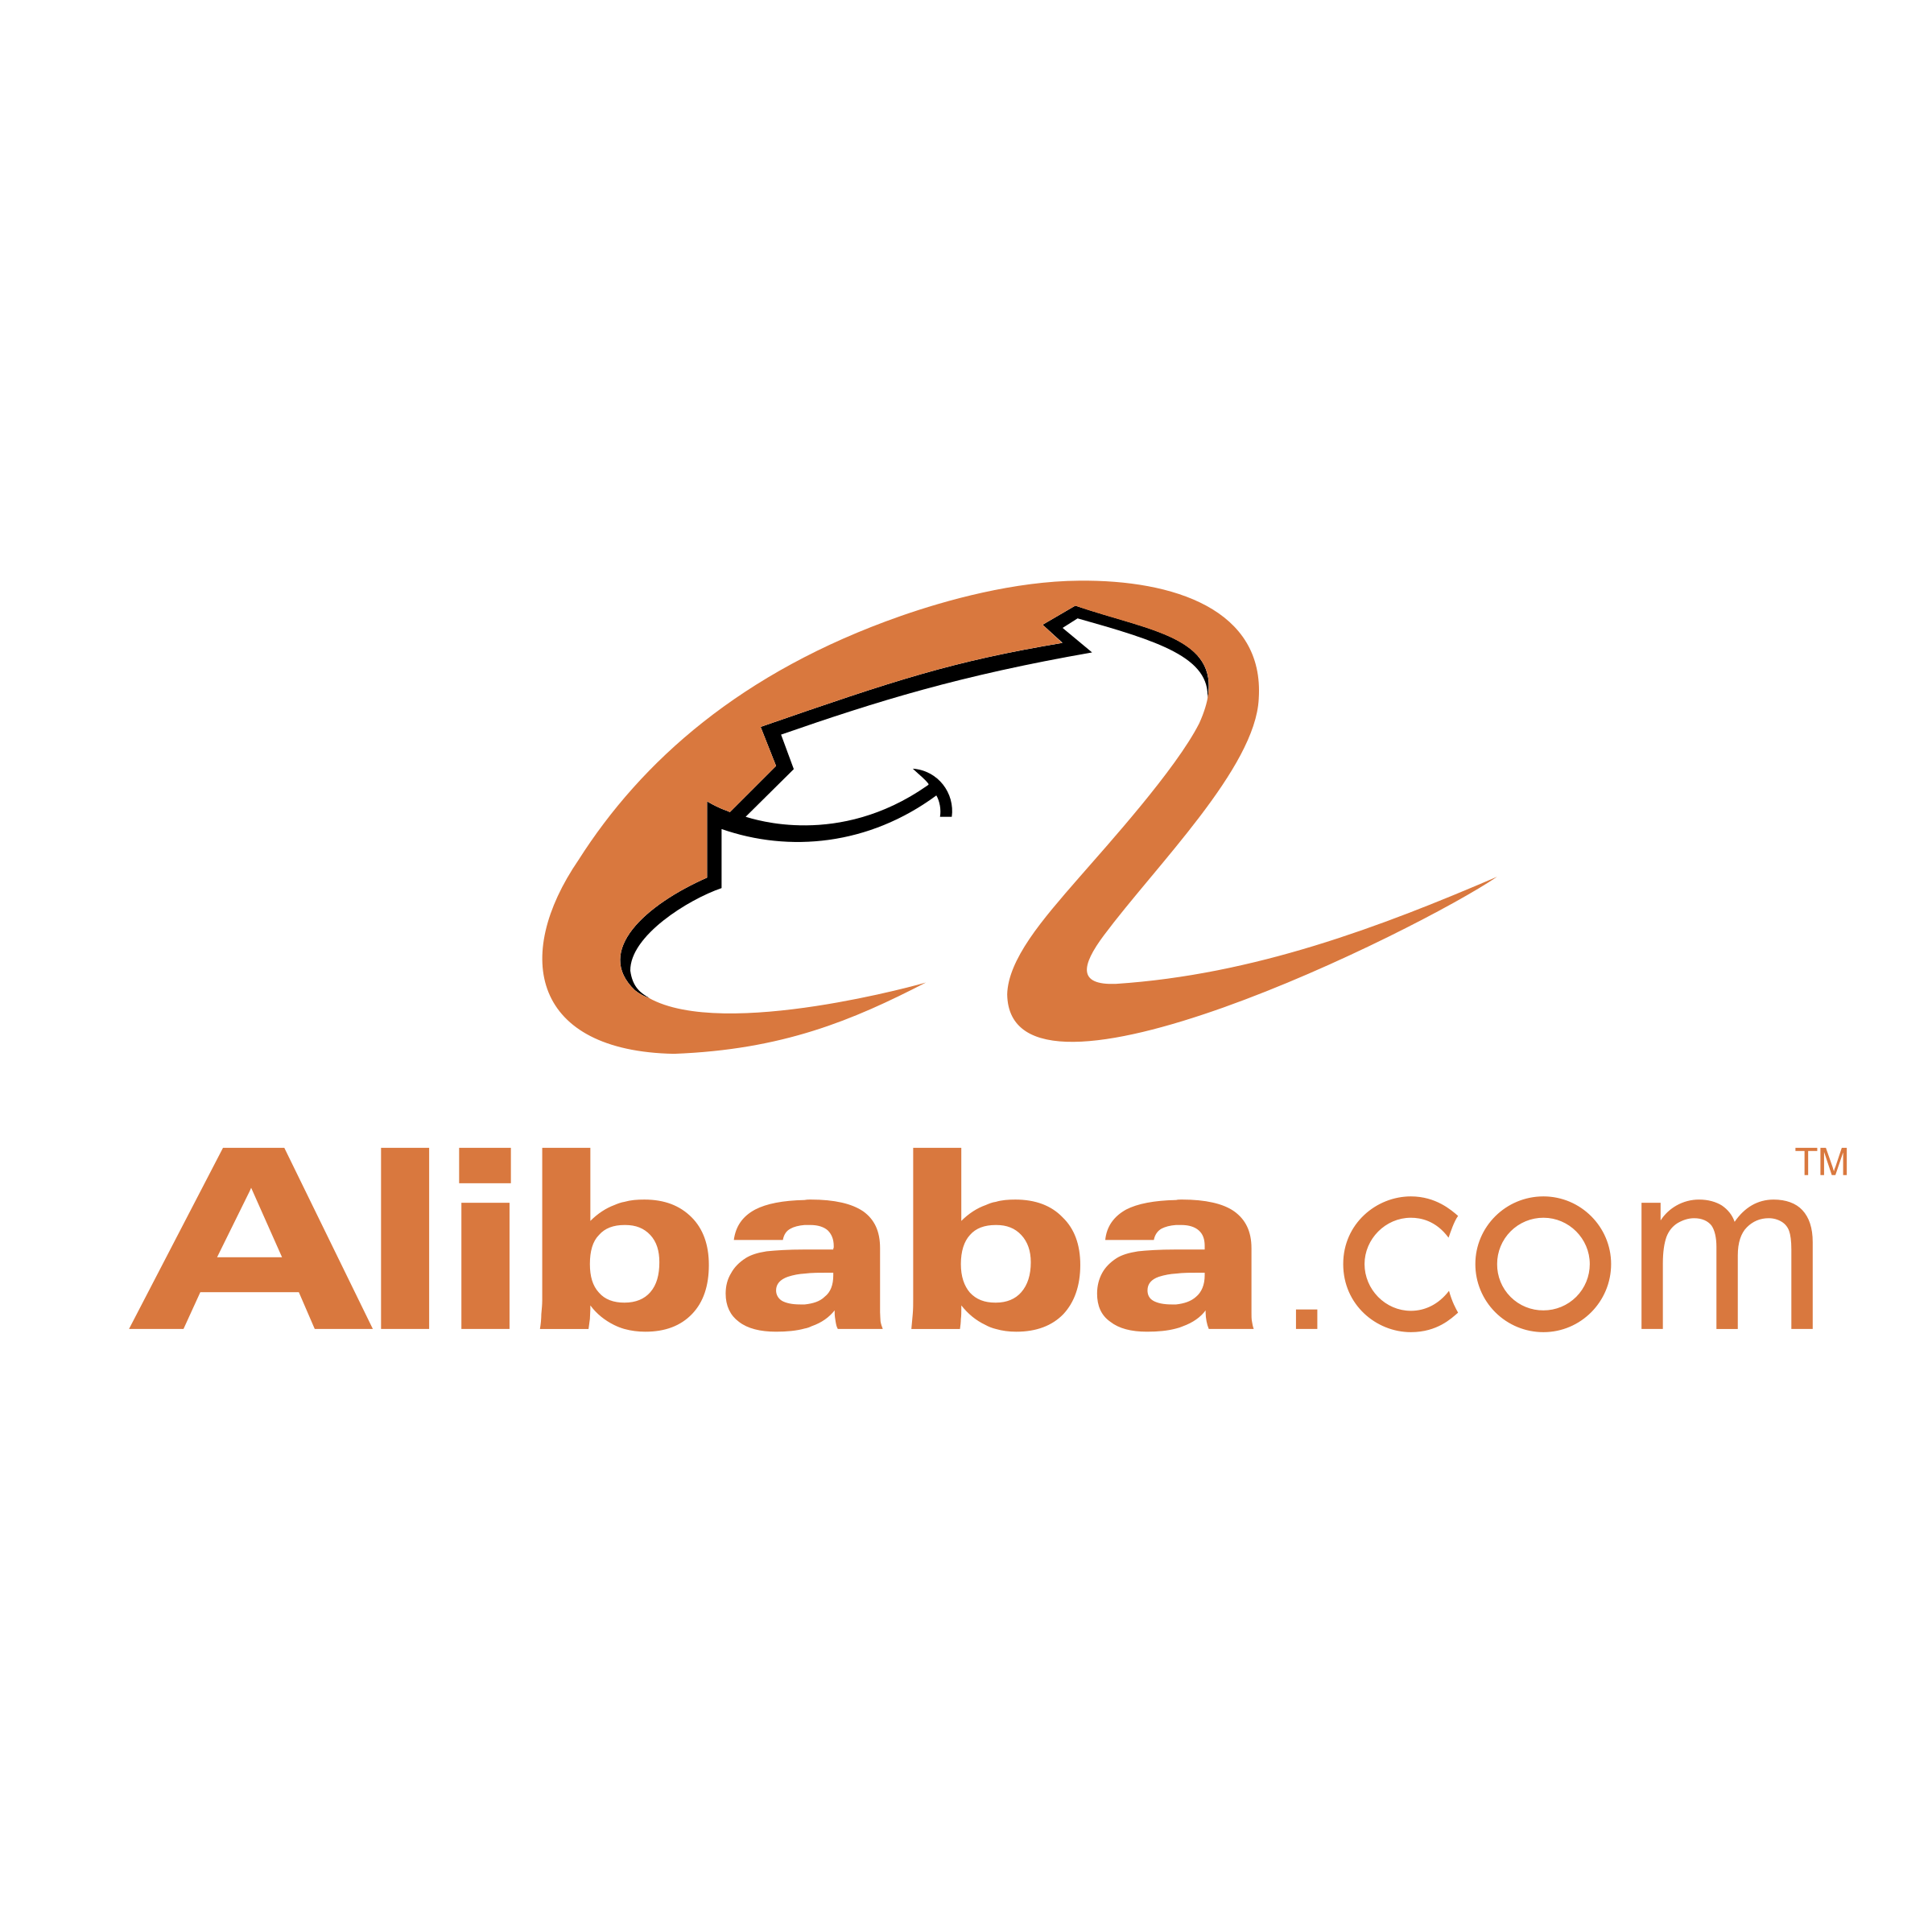 2018 Alibaba Logo - Alibaba Com Logo Png Transparent: Custom Mobile